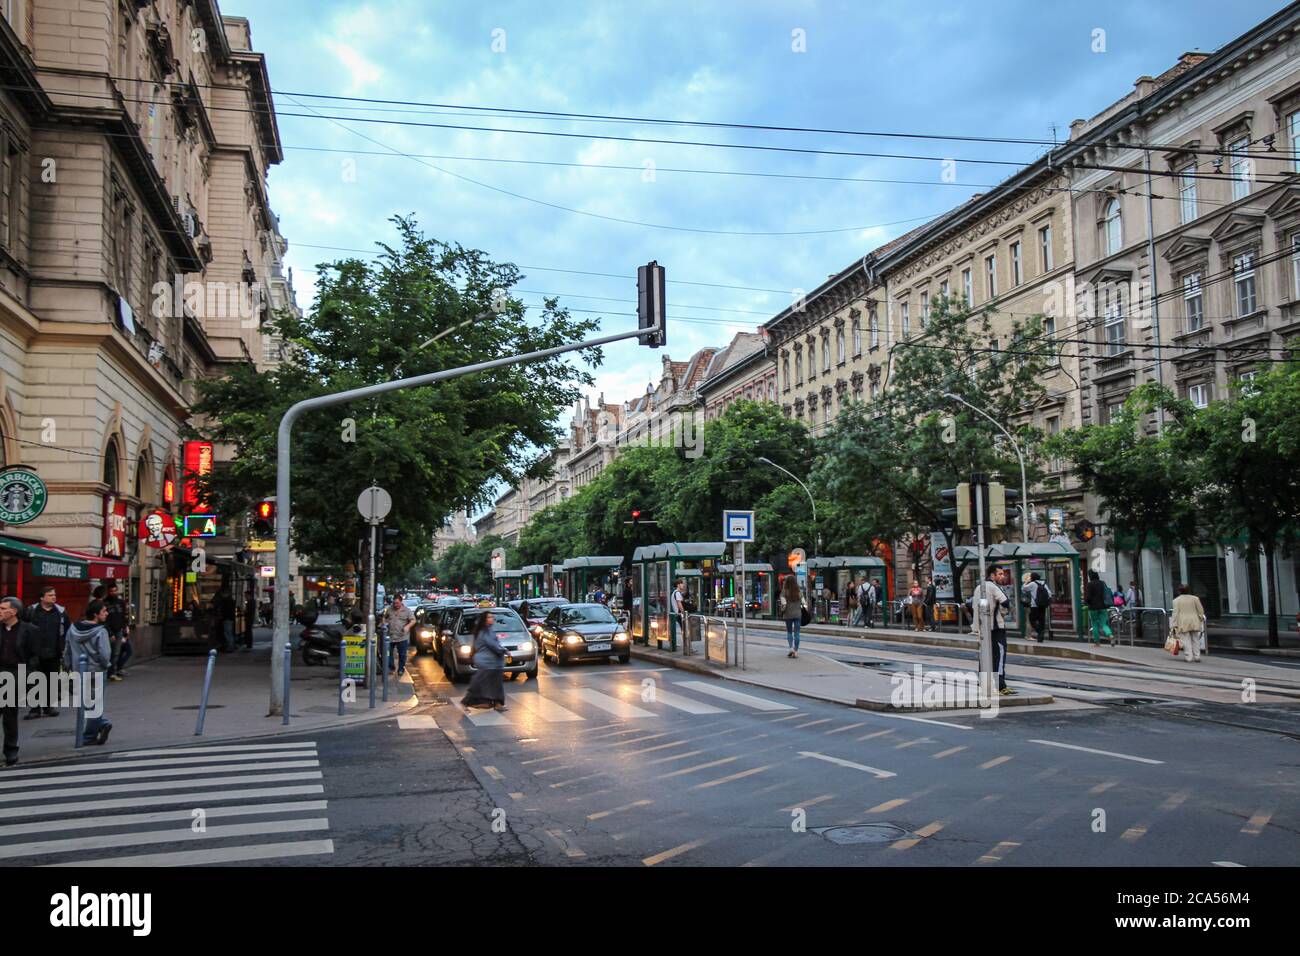 Budapest, Hungría - 28 de junio de 2013: Escena callejera en el cruce de Terez Krt y Kiraly por la noche, Budapest, Hungría Foto de stock